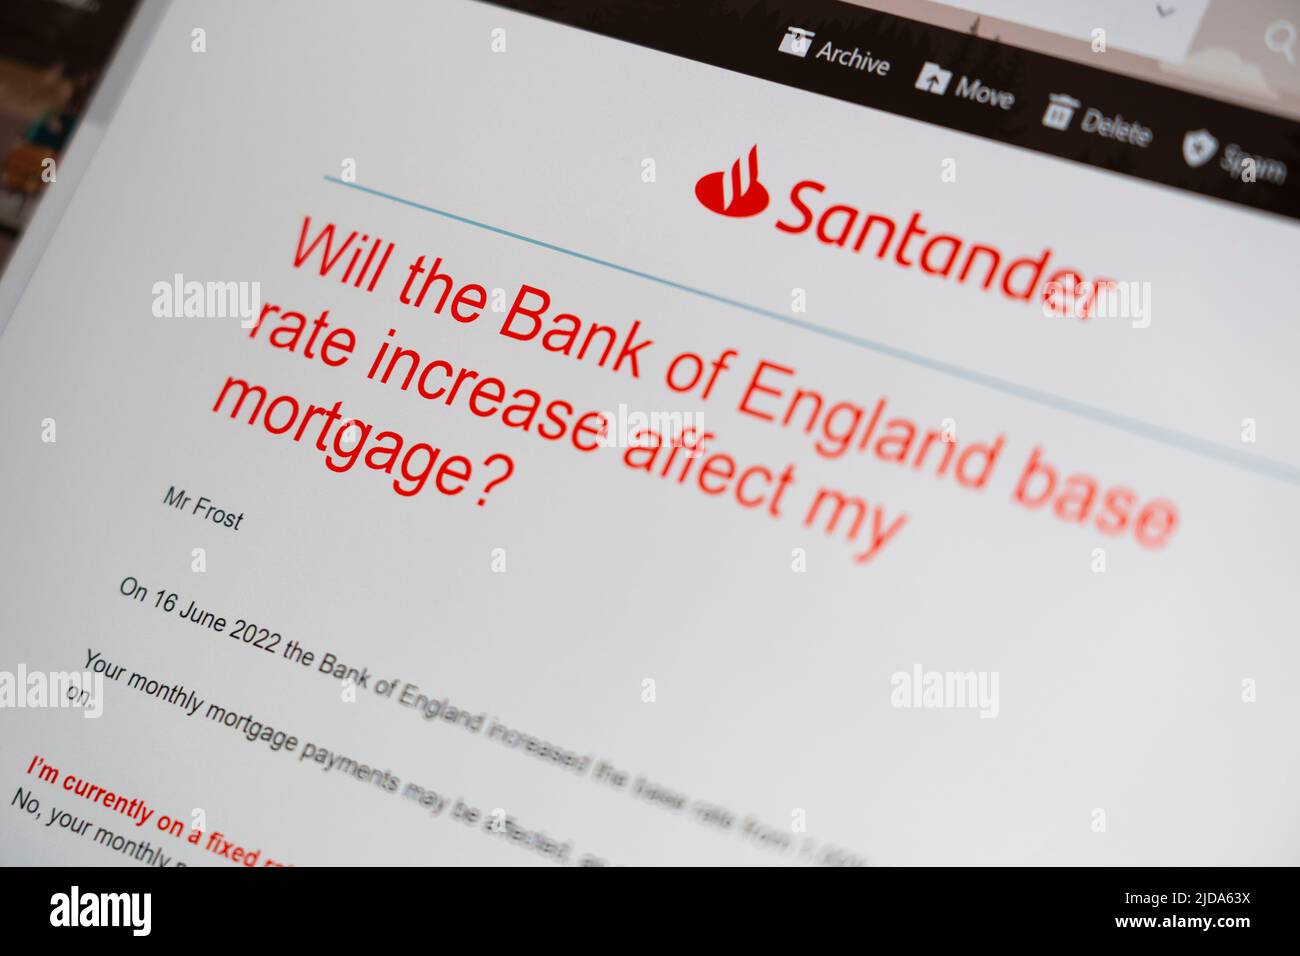 Correo electrónico de Santander, un proveedor de hipotecas del Reino Unido, advirtiendo que el Banco de Inglaterra votó el 16th de junio de 2022 para aumentar la tasa base de interés del 1% al 1,25% Foto de stock